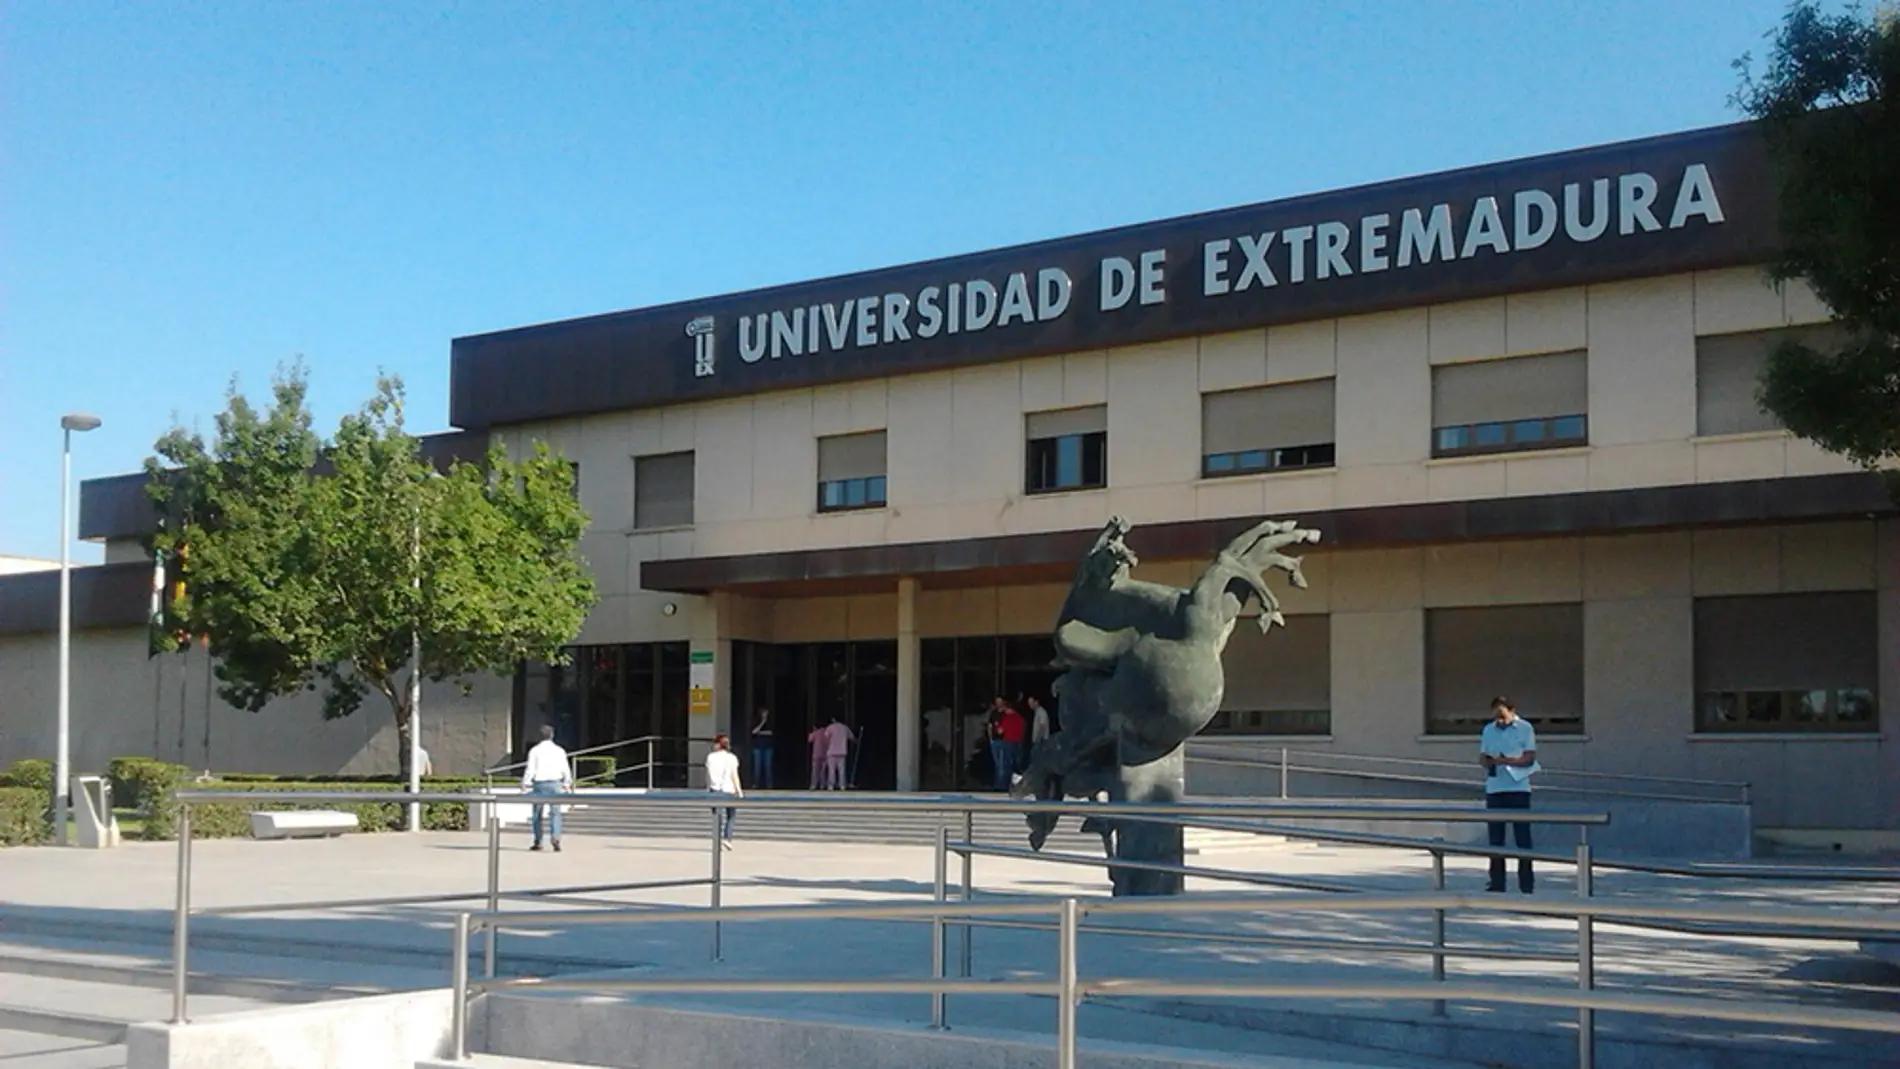 campus universitario badajoz - Cuántos estudiantes hay en la universidad de Badajoz